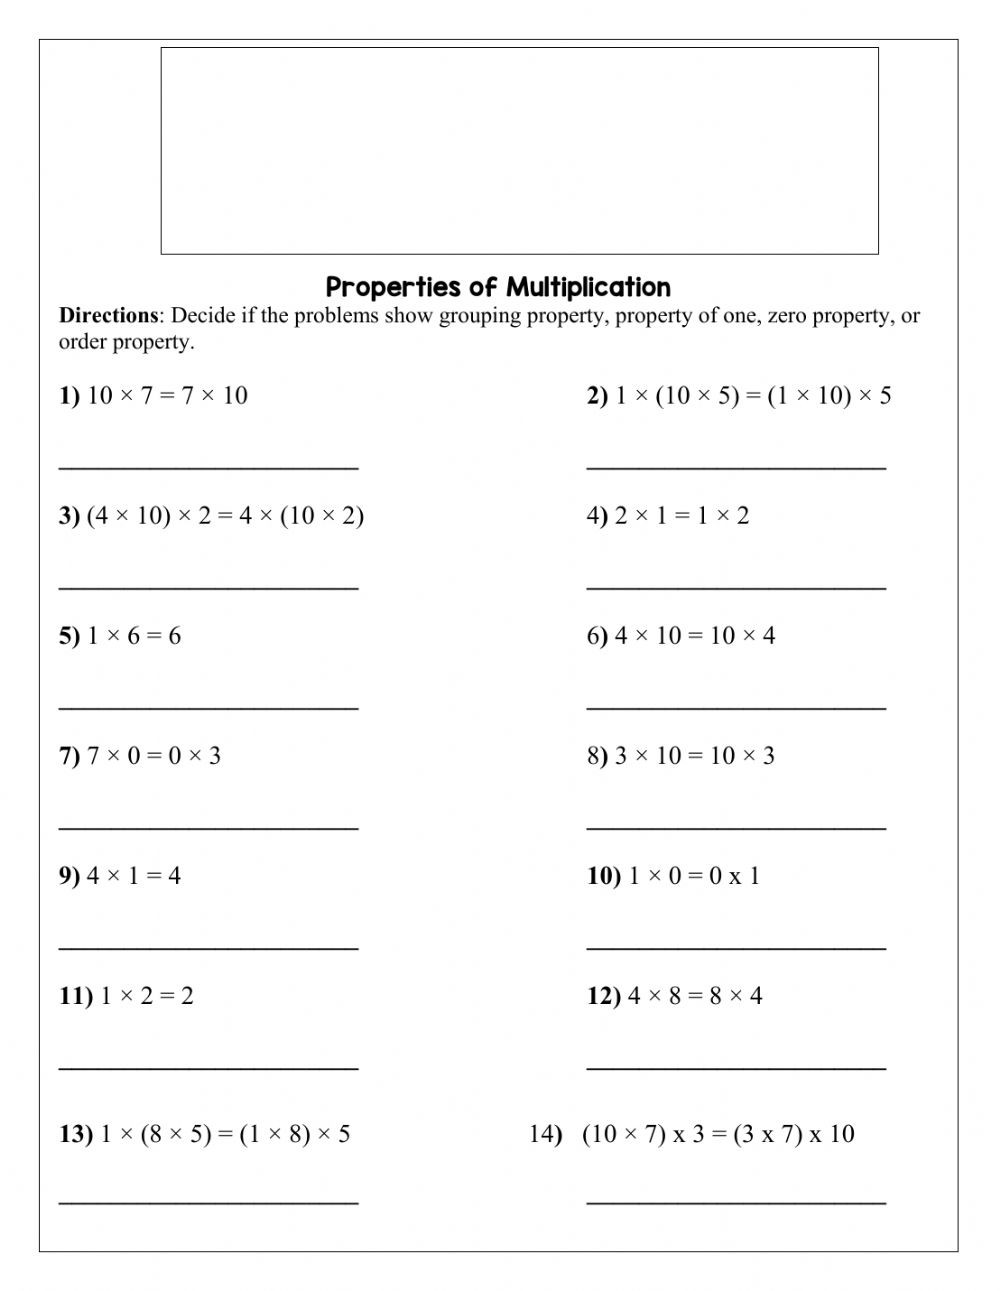 properties-of-multiplication-worksheets-printable-worksheets